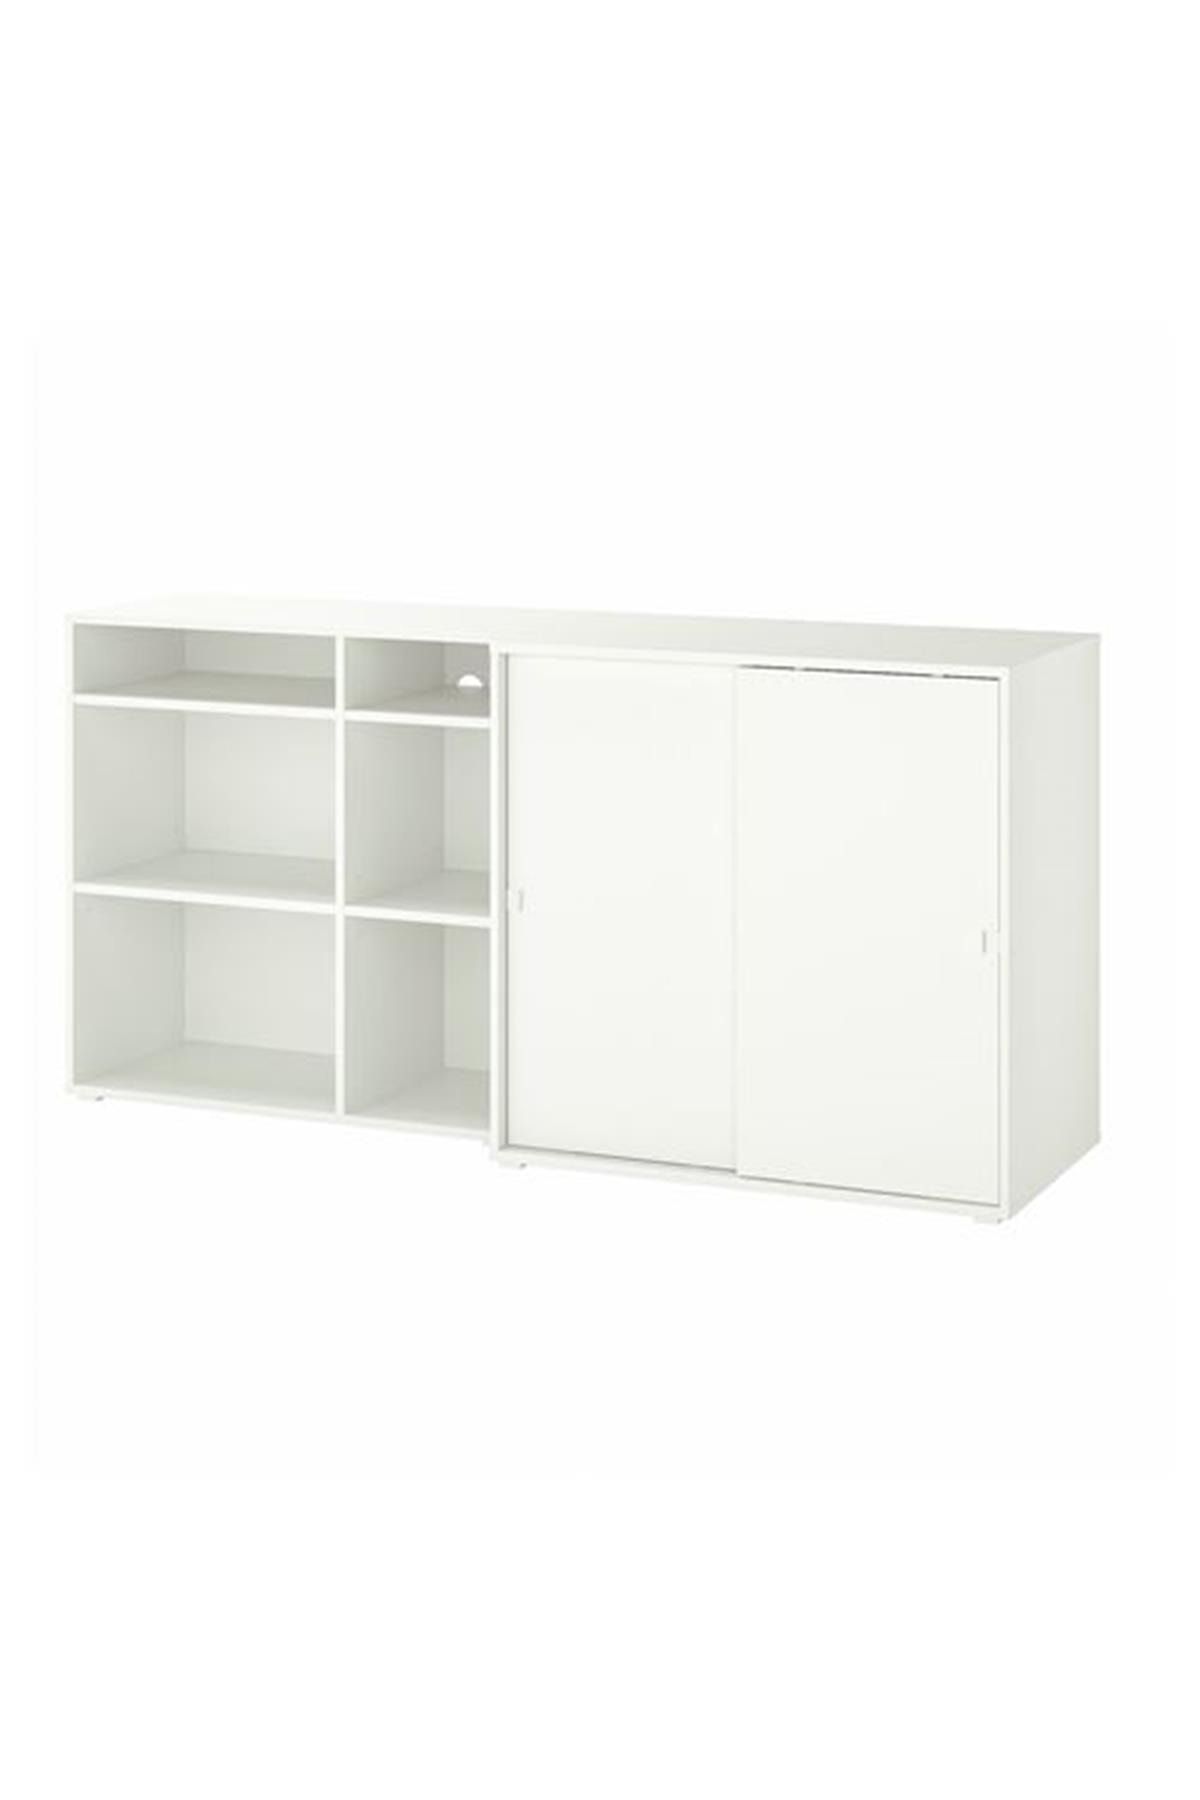 IKEA /vıhals Beyaz Saklama Ünitesi 190x47x90cm